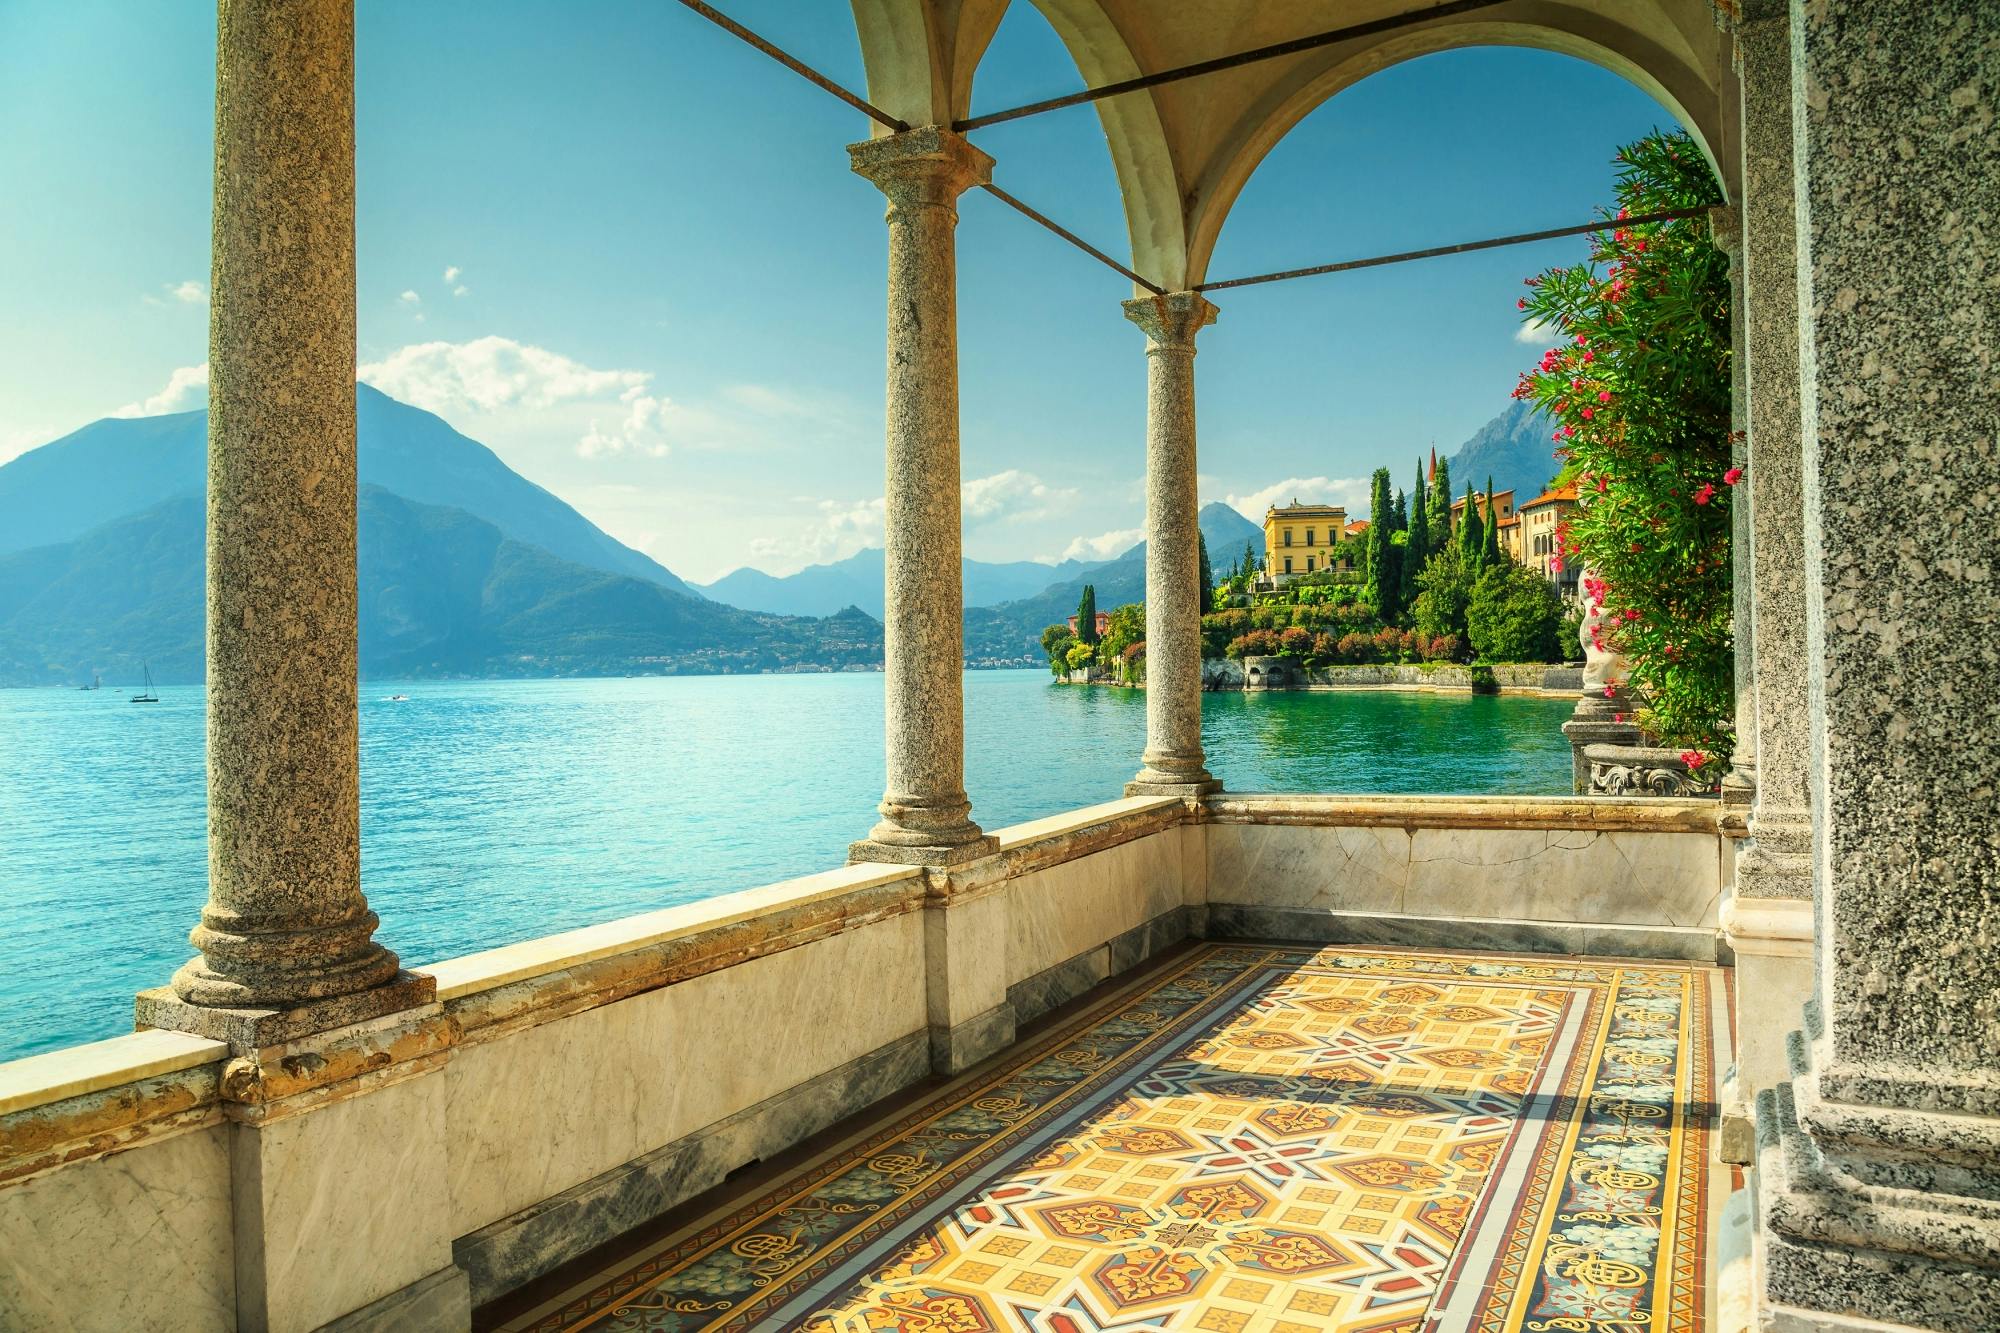 Audioguida Como e Lago di Como con app TravelMate